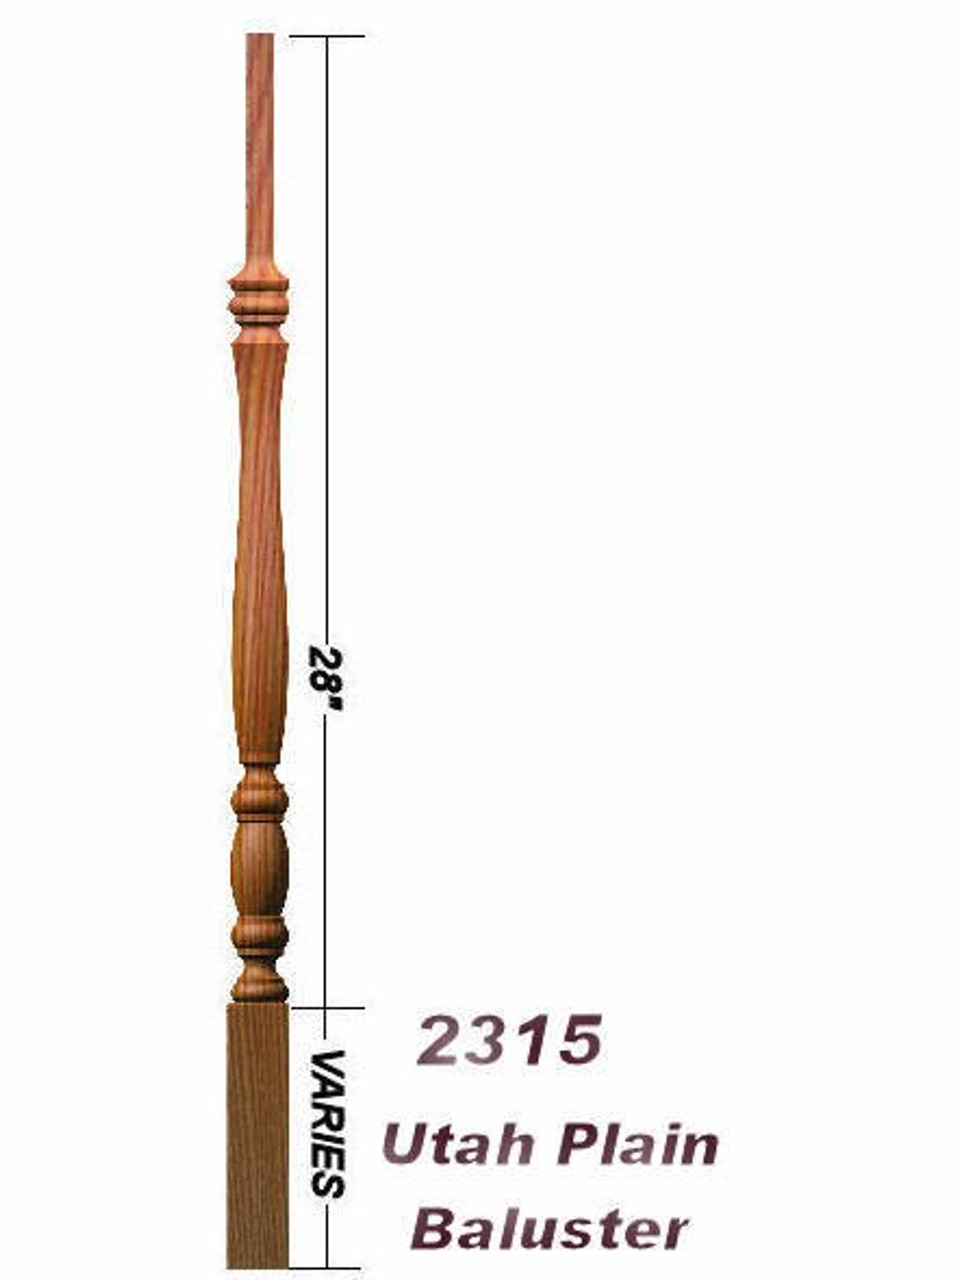 2315 42" Utah Classic Pin Top Baluster Dimensional Information